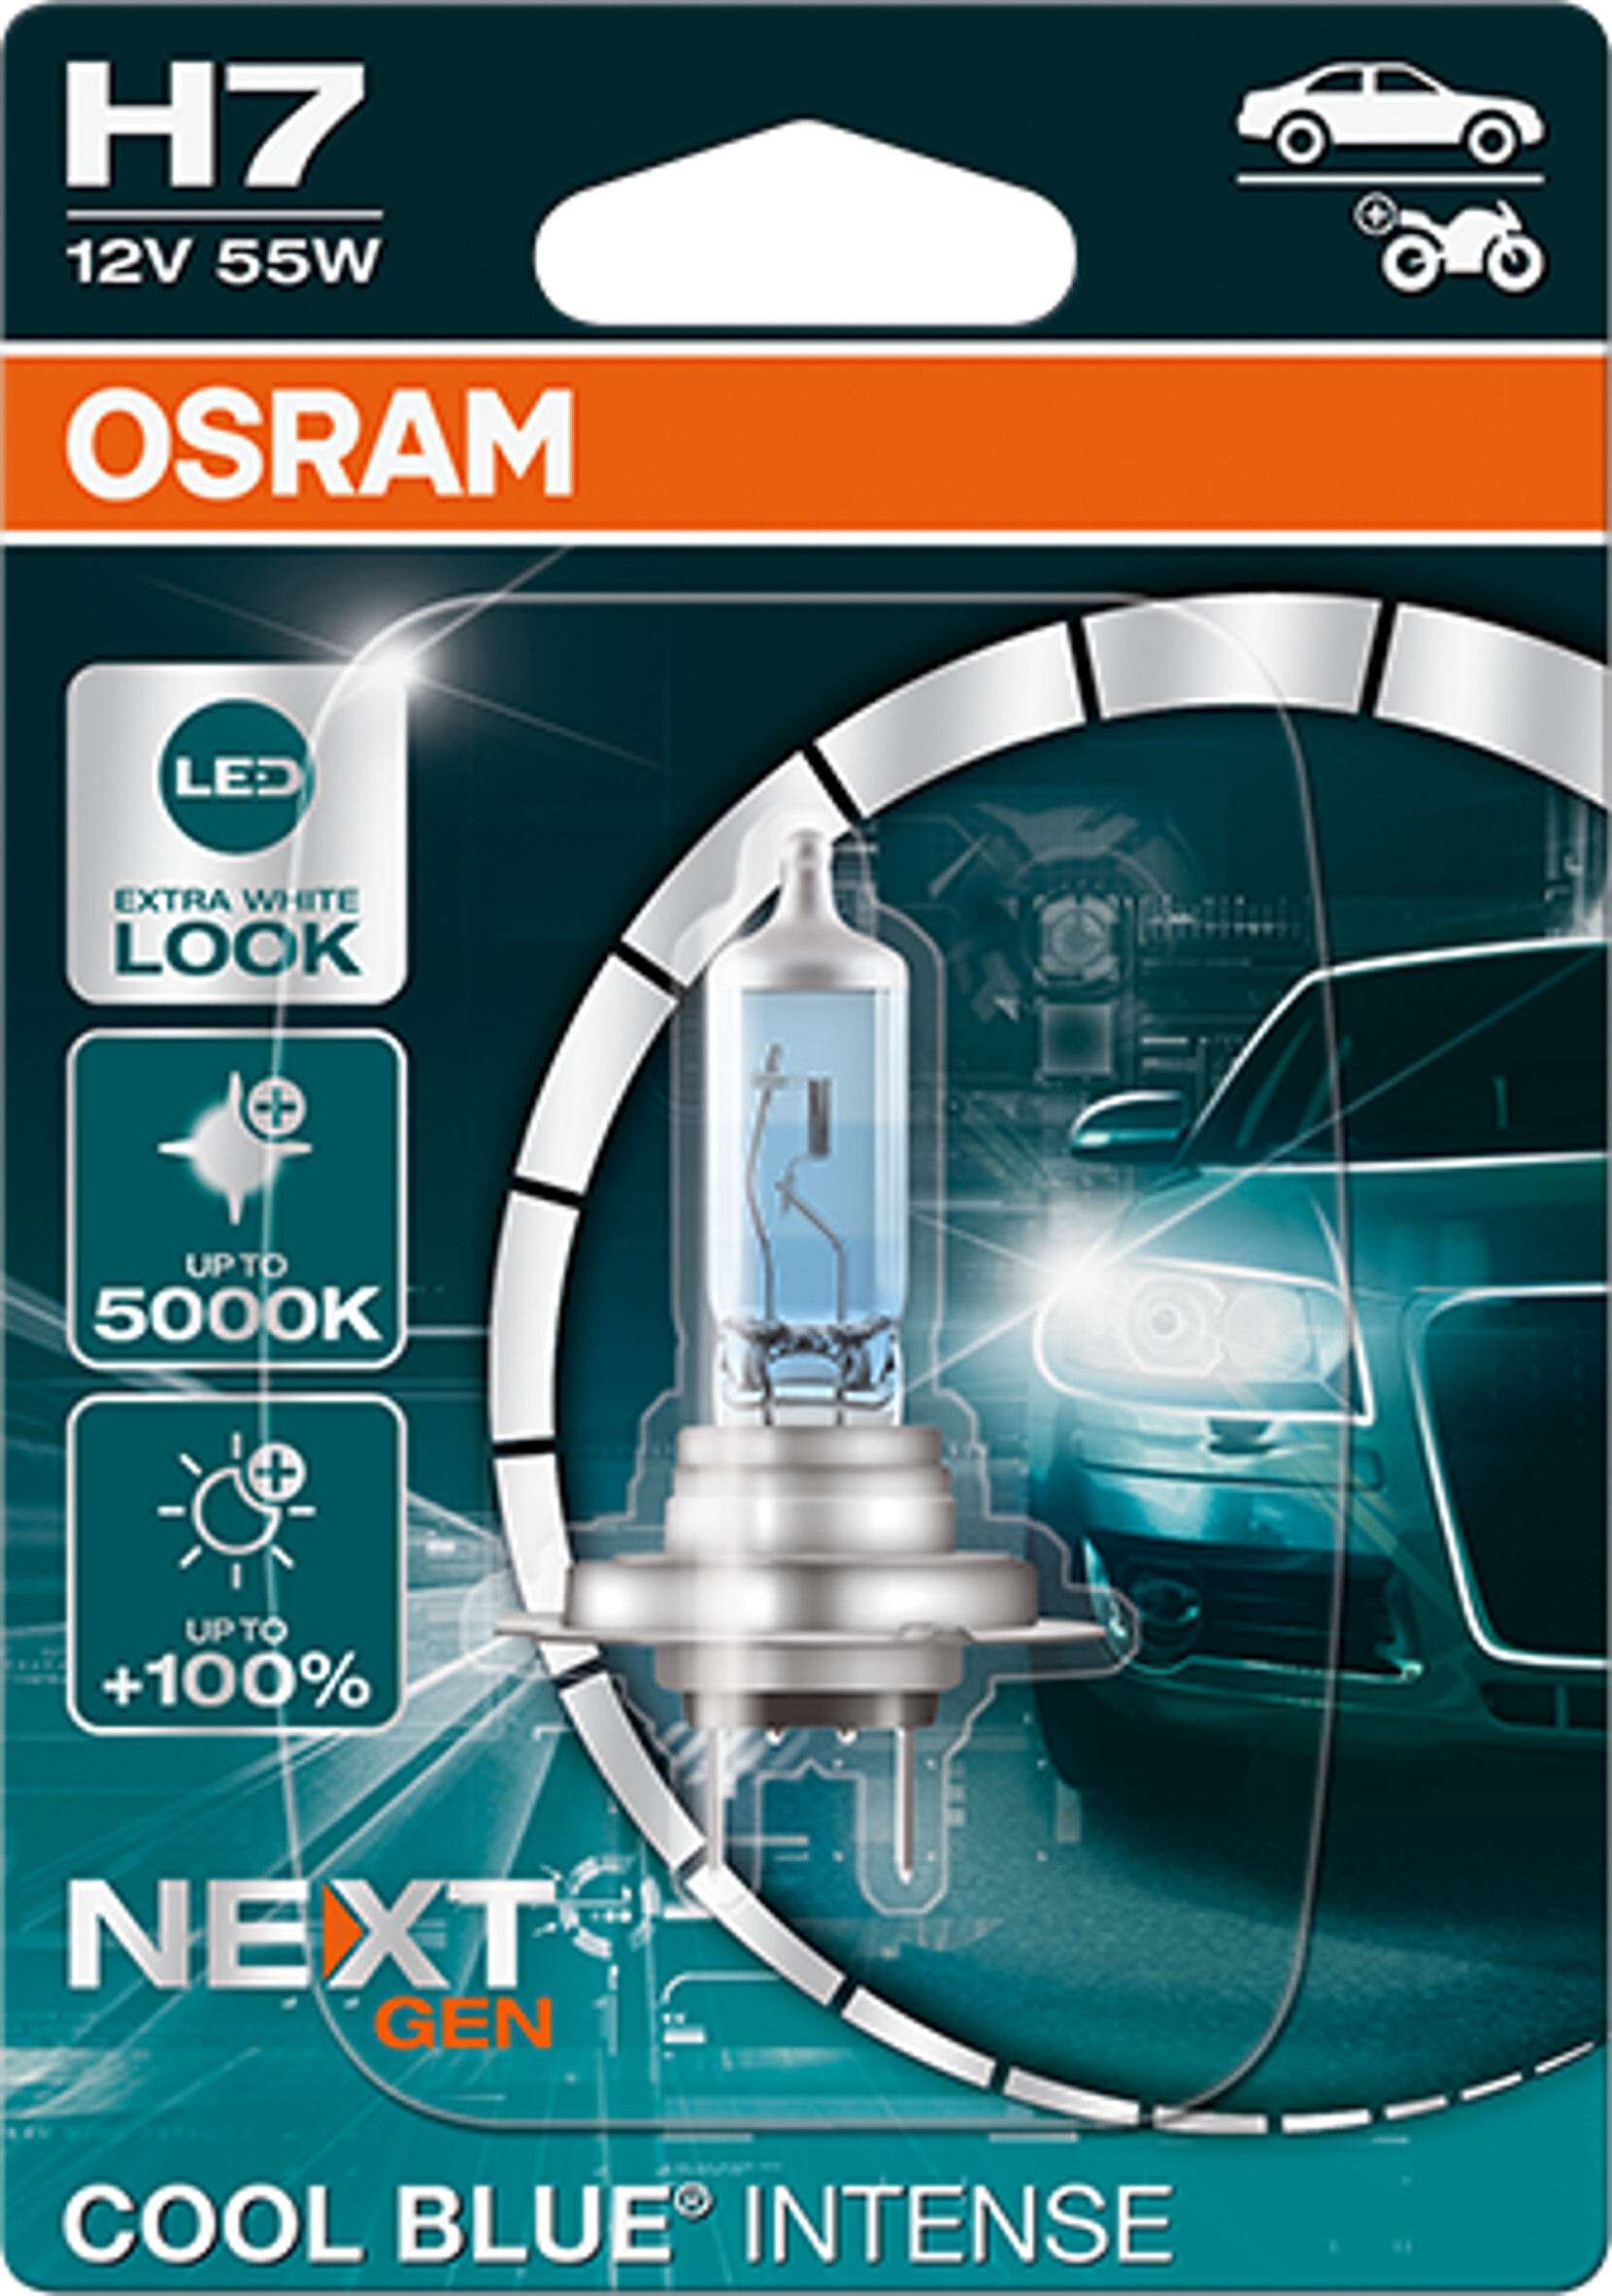 Osram Night Breaker Laser H7 next Generation, +150% mehr Helligkeit,  Halogen-Scheinwerferlampe, 64210NL-HCB, 12V PKW, Duo Box (2 Lampen)(2  Stück) 1er Pack : : Auto & Motorrad